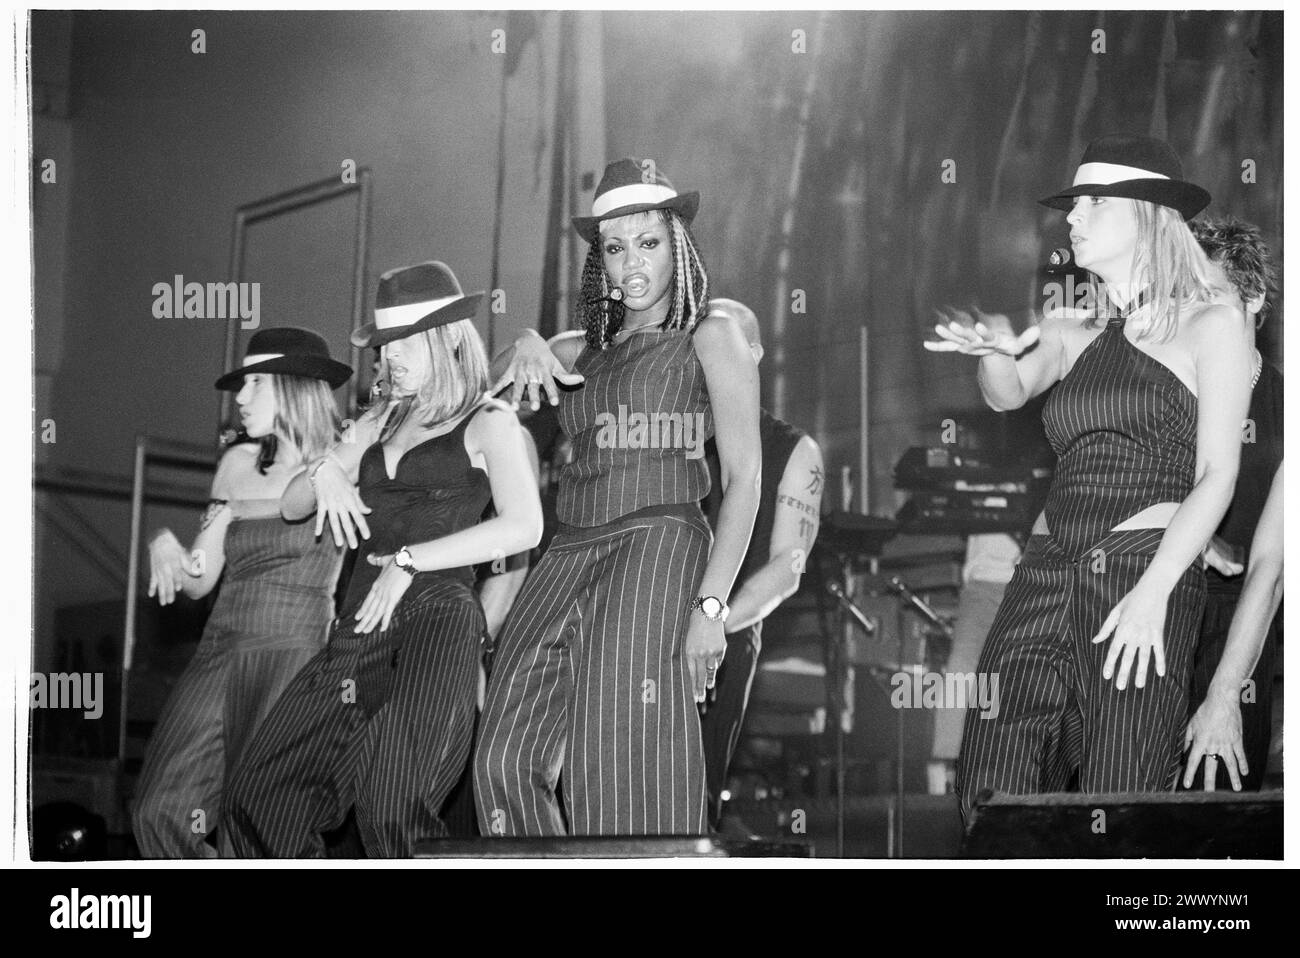 ALL SAINTS, 1999, KONZERT: All Saints auf dem Höhepunkt ihrer Berühmtheit in der Cardiff International Arena CIA in Cardiff, Wales, Großbritannien am 18. Juni 1999. Foto: Rob Watkins. INFO: All Saints, eine britische Mädchengruppe, die 1993 gegründet wurde. Sie hatten ihre ersten Hits im Jahr 1997 und sorgten mit ihren R&B-angehauchten Popsongs wie Never Ever und Pure Shores weltweit für Wellen. Ihr schwüler Gesang, elegante Harmonien und urbaner Stil fesselten das Publikum. Stockfoto